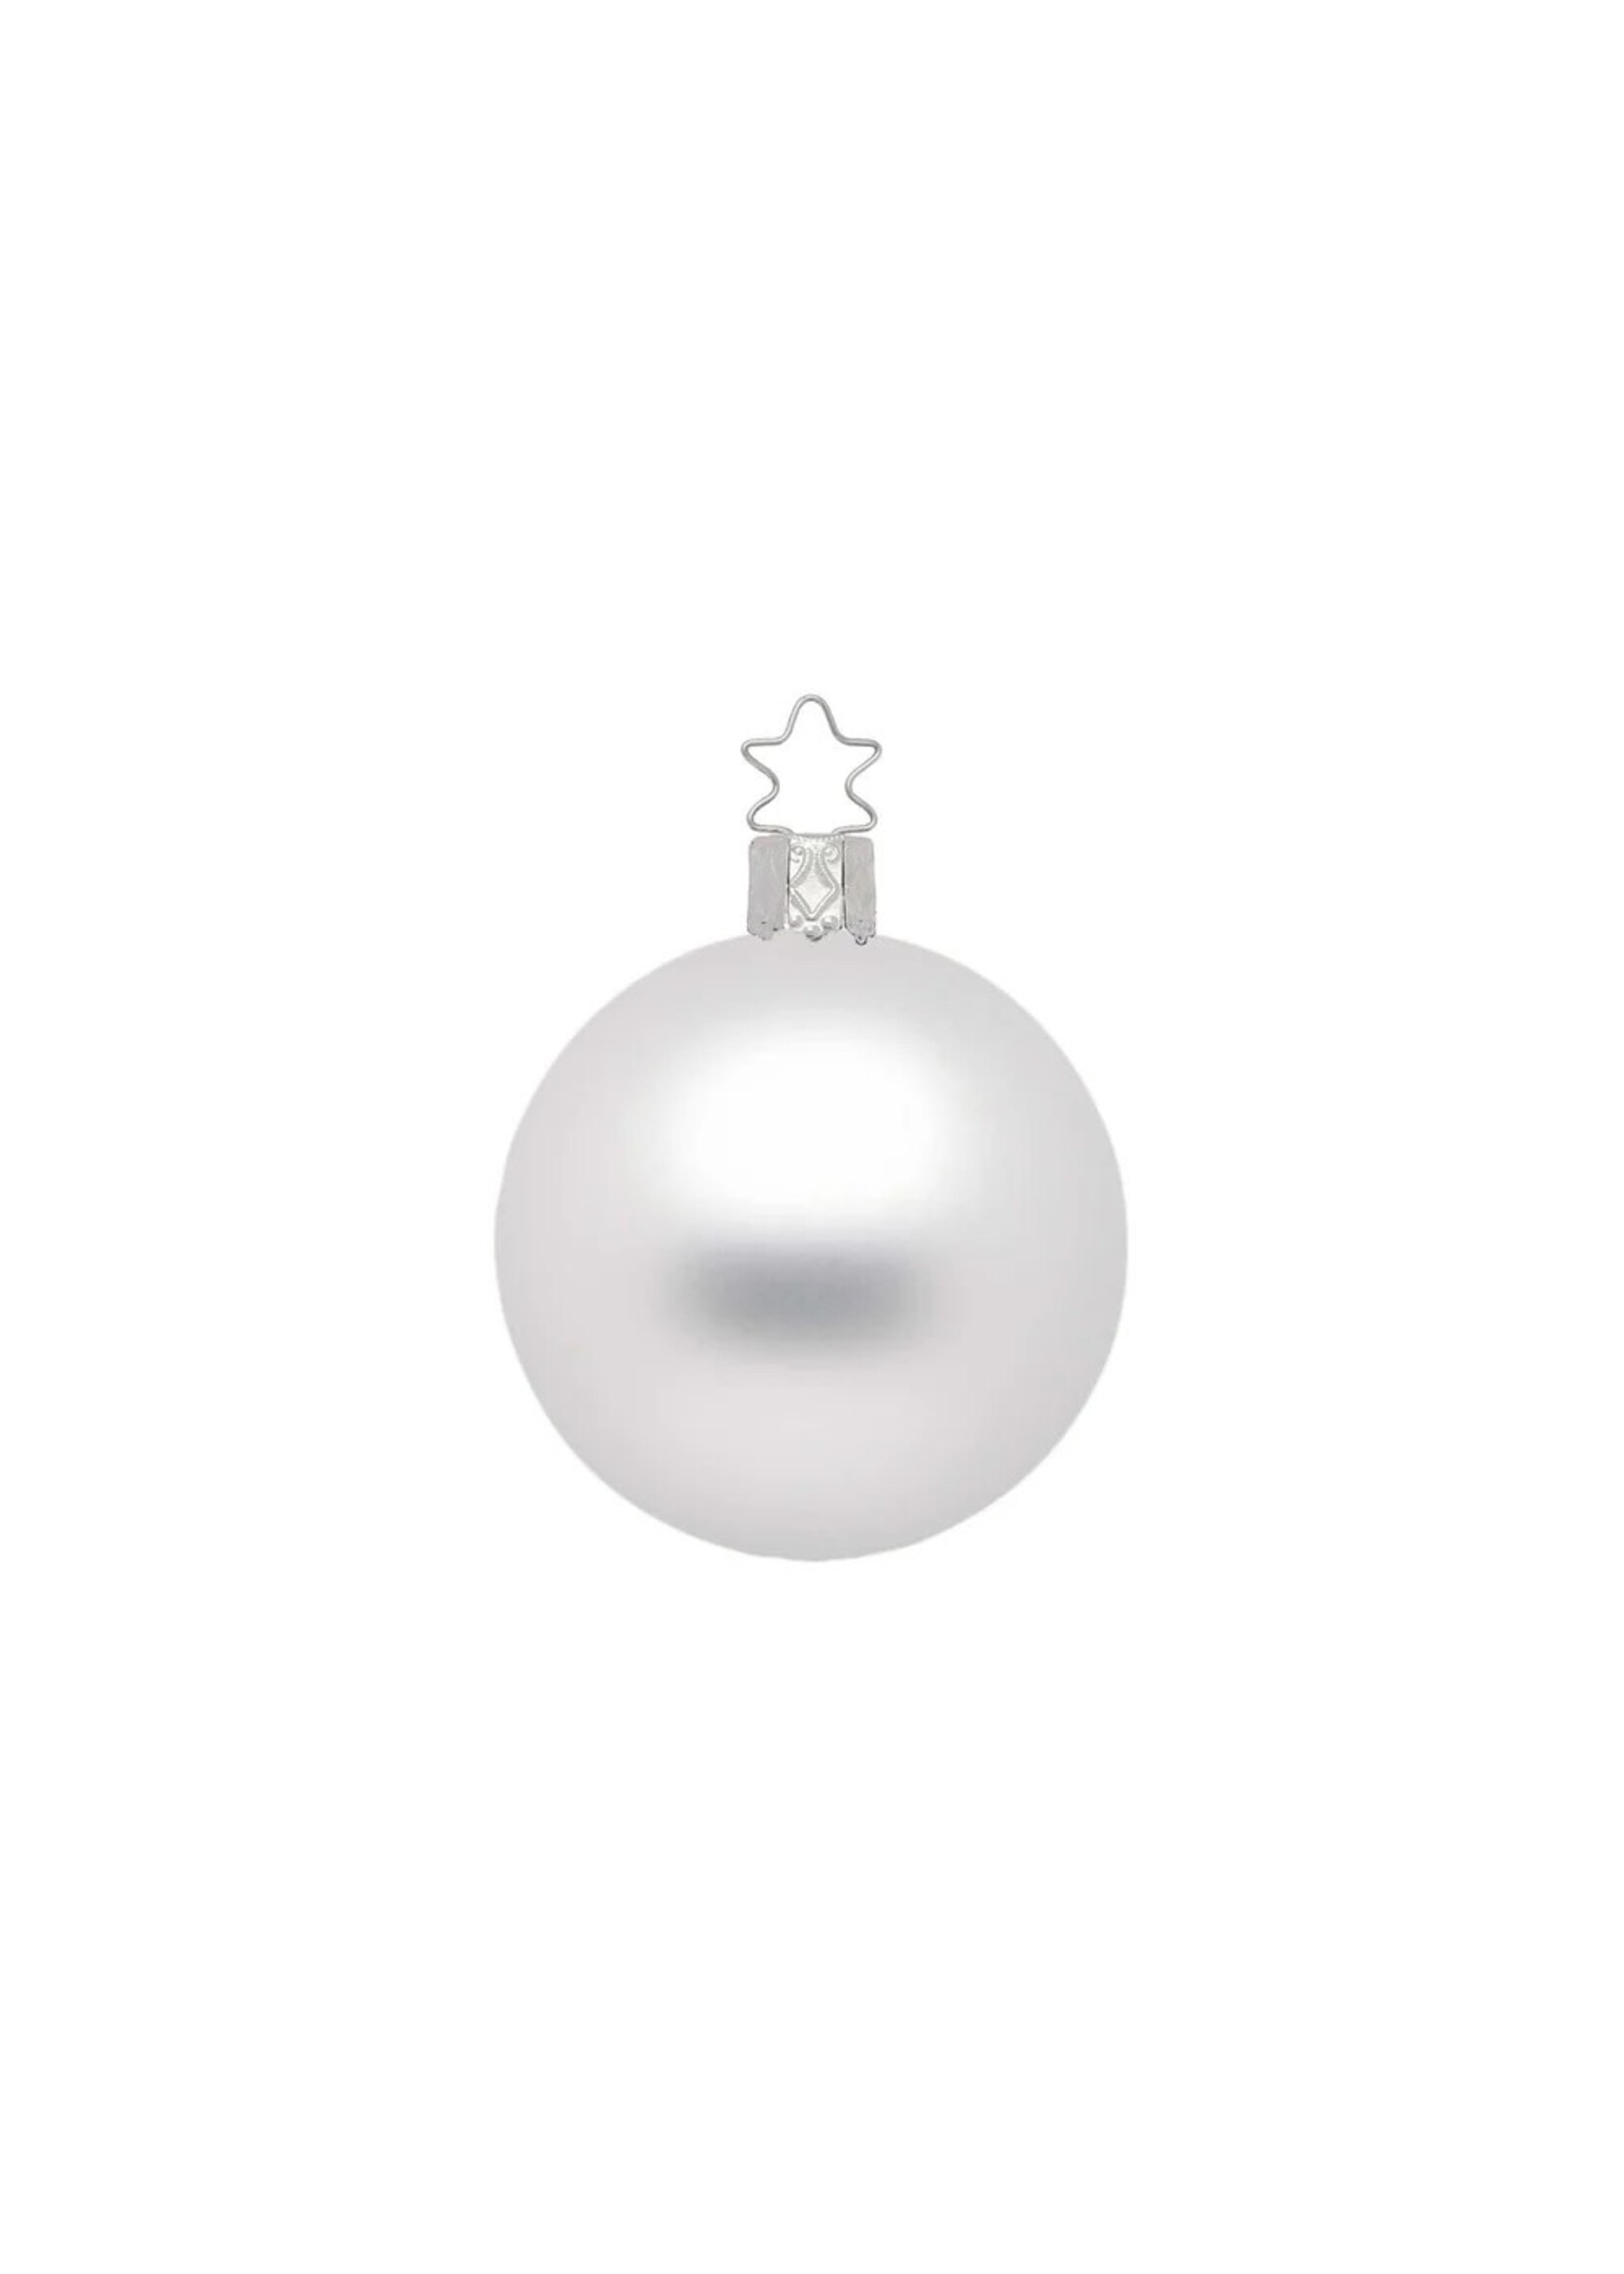 Ornament - Ball White Matt 4"